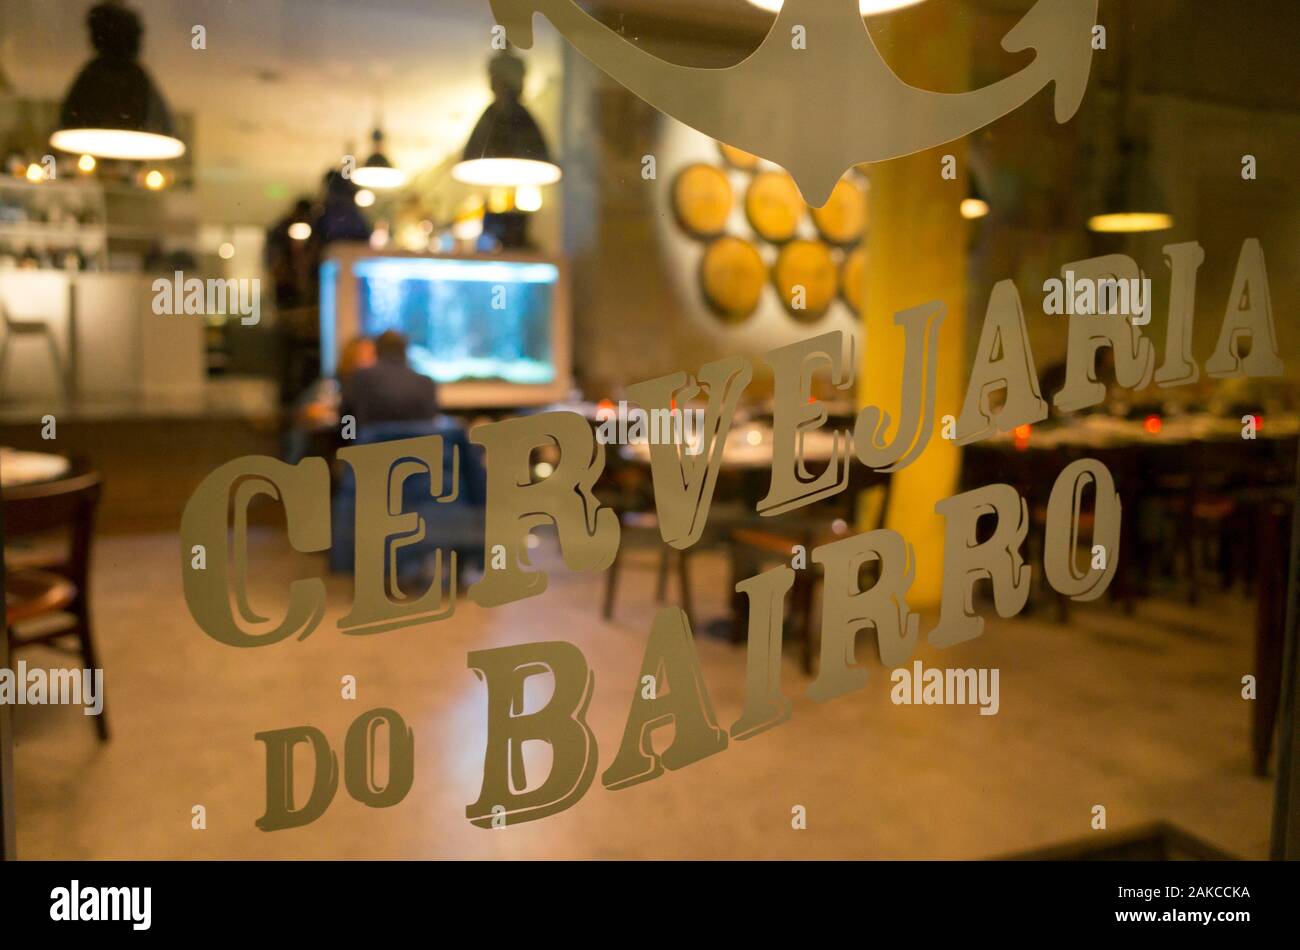 Portugal, Lisbonne, Bairro Alto, restaurant Banque D'Images